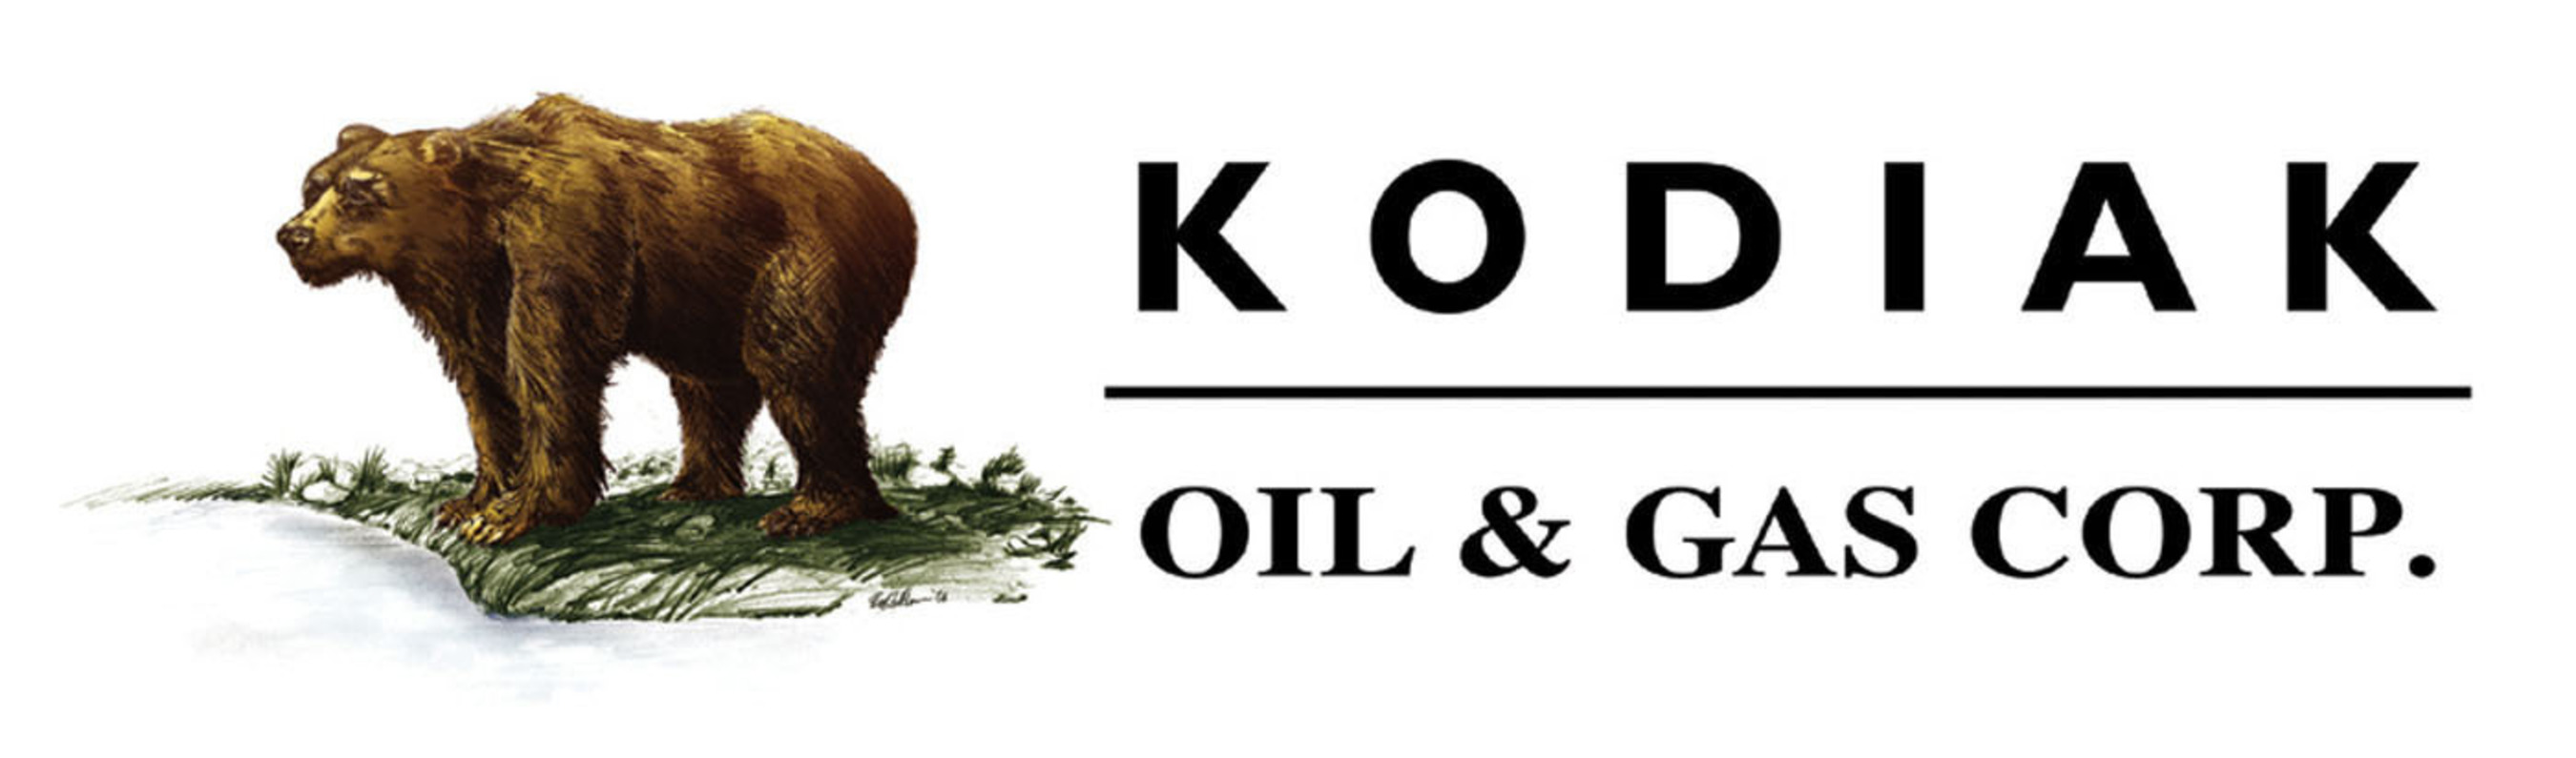 Kodiak Oil & Gas Corp. (PRNewsFoto/Kodiak Oil & Gas Corp.) (PRNewsFoto/)